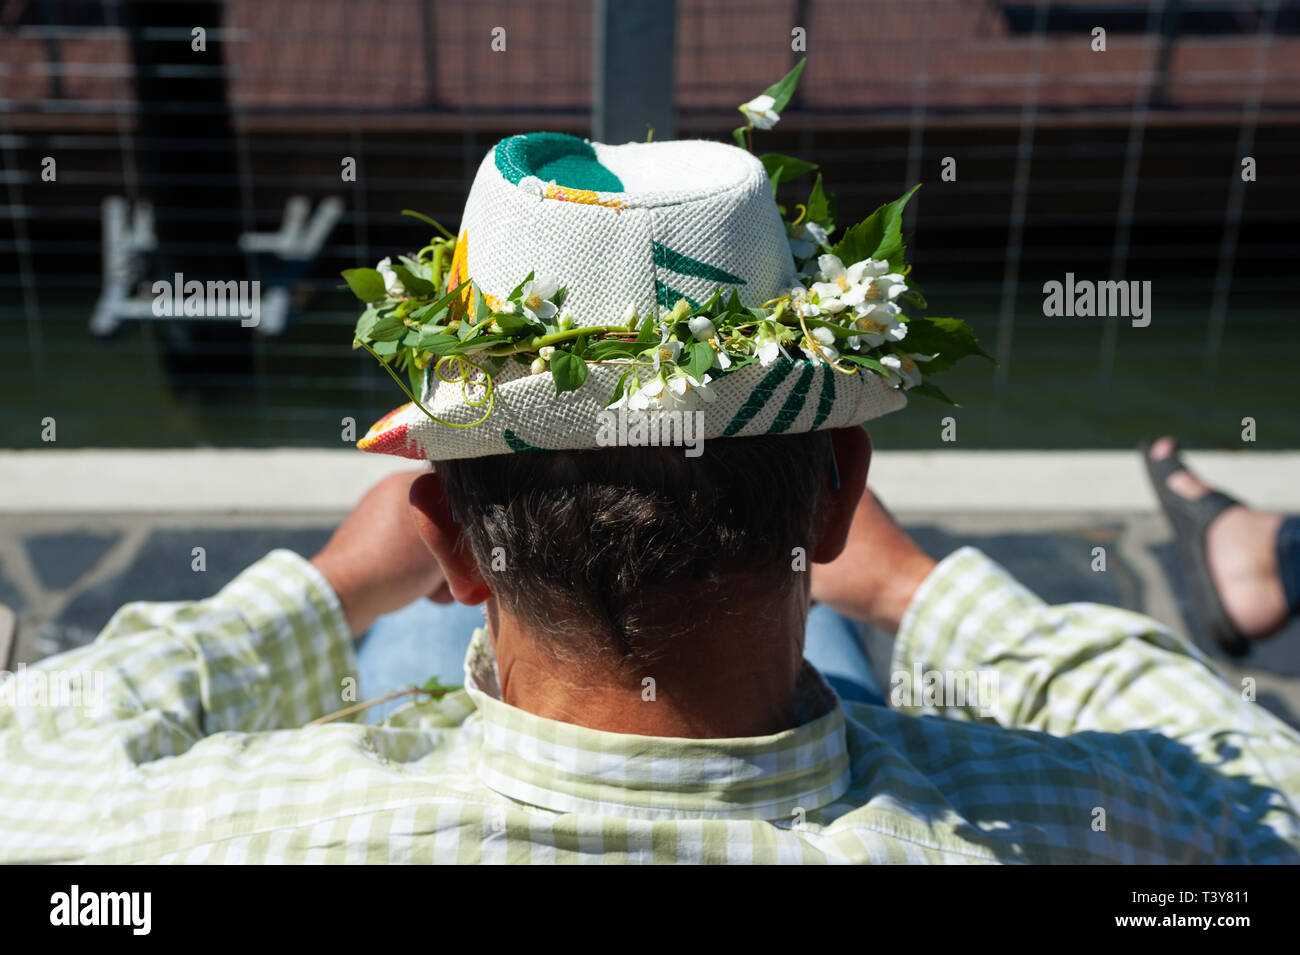 23.06.2018, Helsinki, Finnland, Europa - ein Mann, der eine Blume dekoriert Hut sitzt durch den Allas Meer Pool. Anlässlich der Hochsommer viele Mitarbeiter Stockfoto